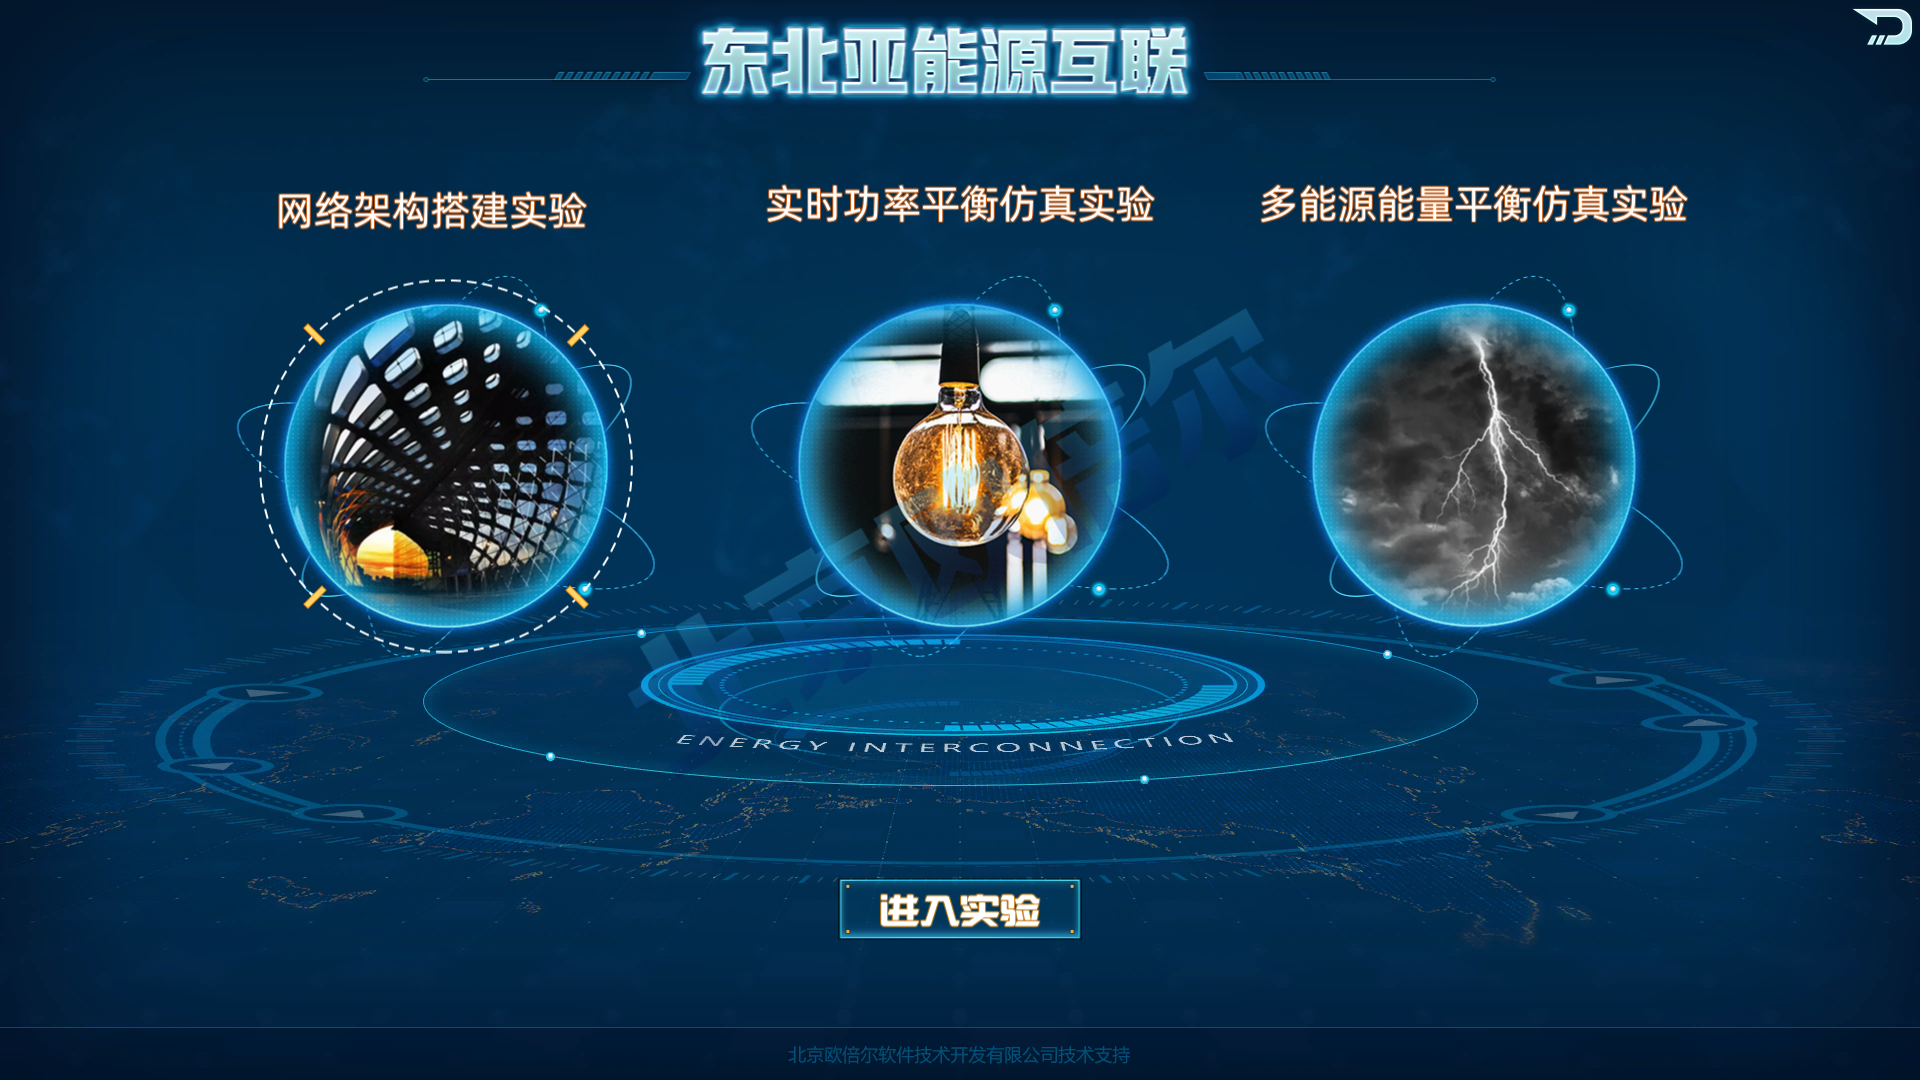 北京欧倍尔东北亚能源互联网虚拟仿真实验教学平台